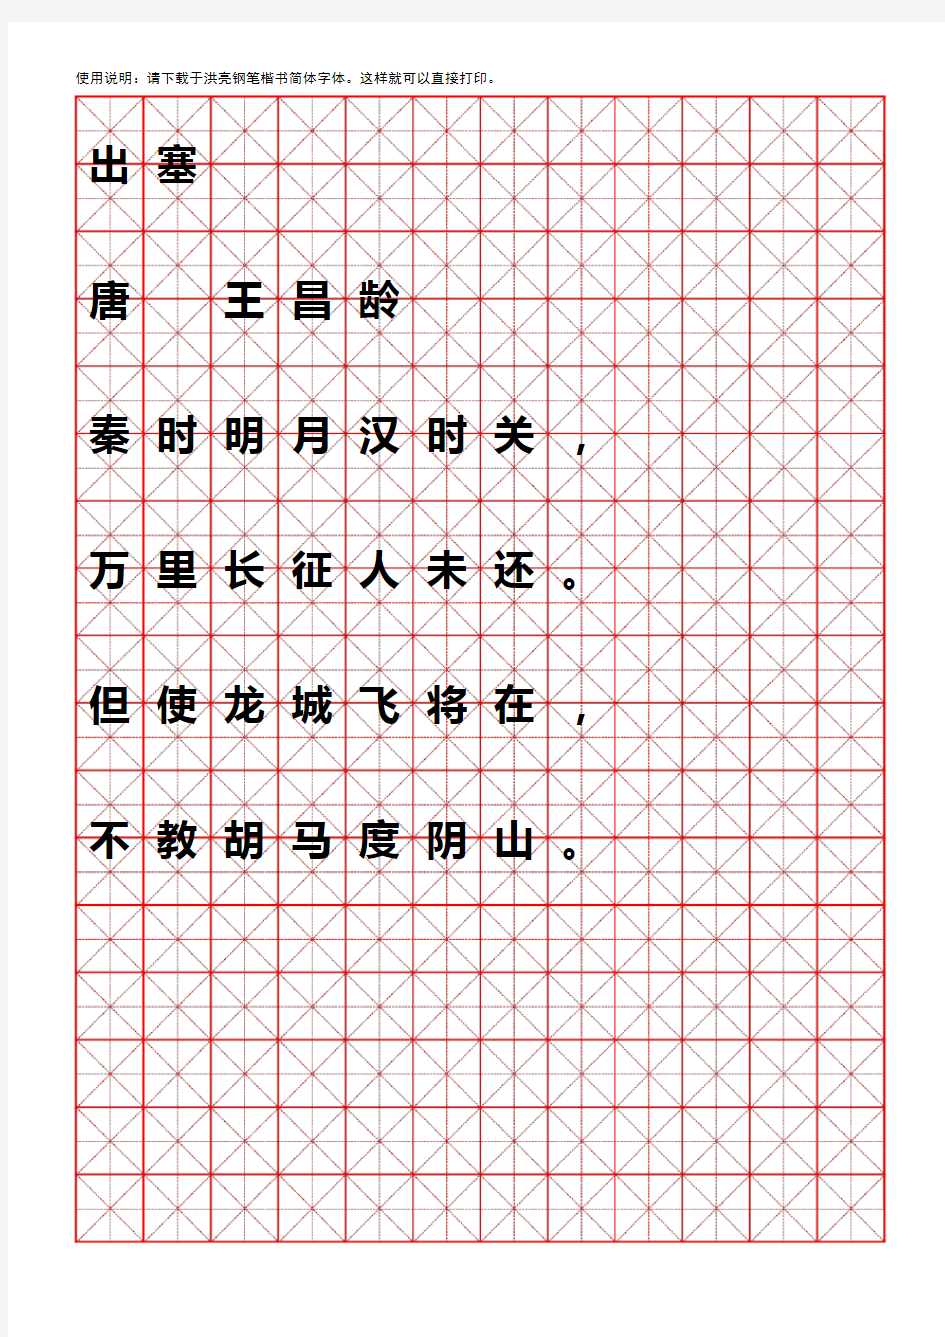 小学生,A4版,米字格,硬笔书法纸模板(可随意打字)